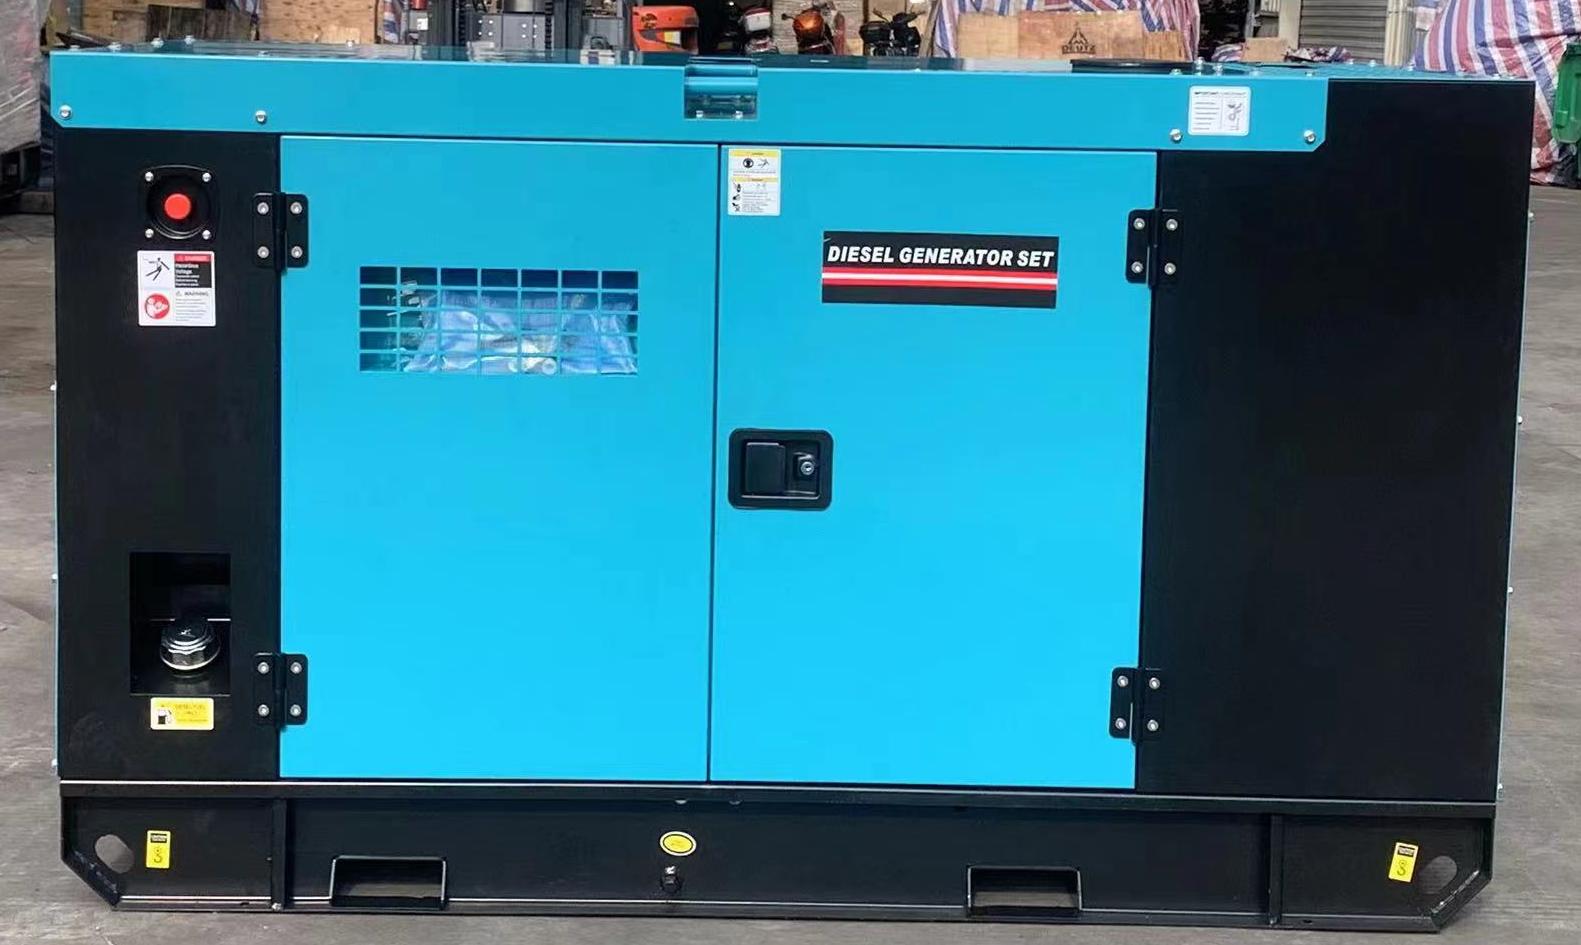 DGS-RC20S diesel generator set